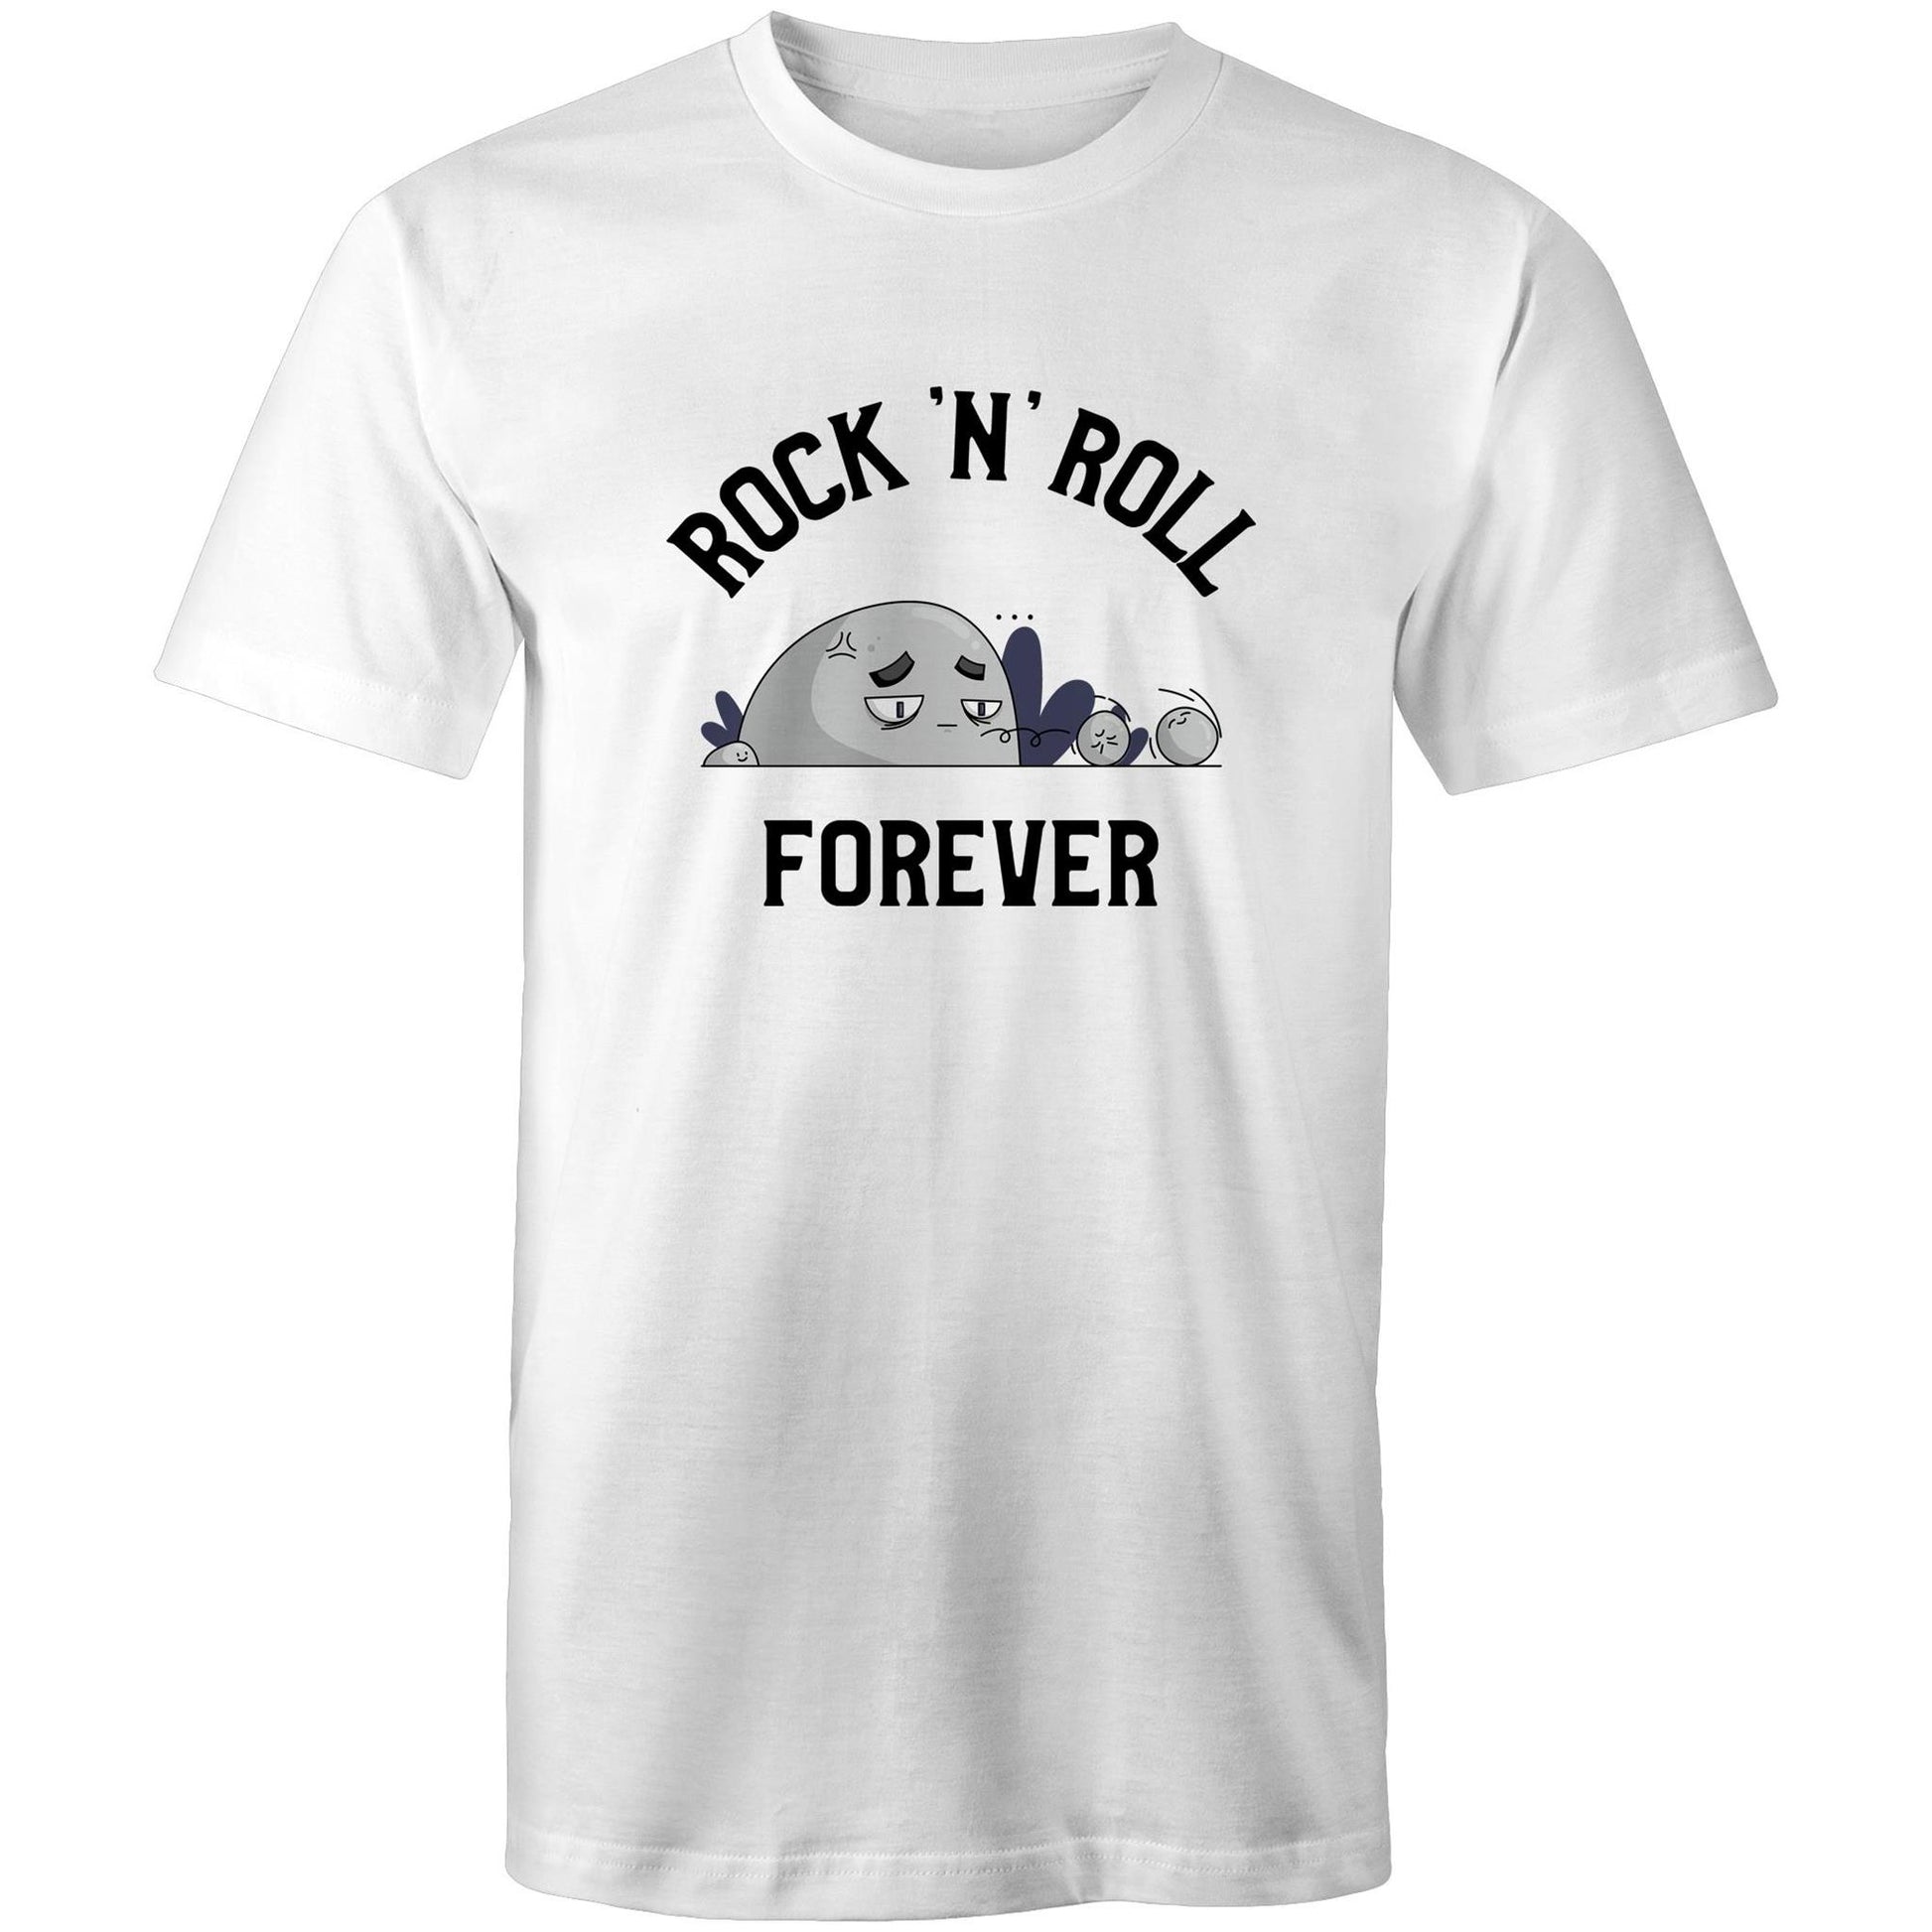 Rock 'N' Roll Forever - Mens T-Shirt White Mens T-shirt Music